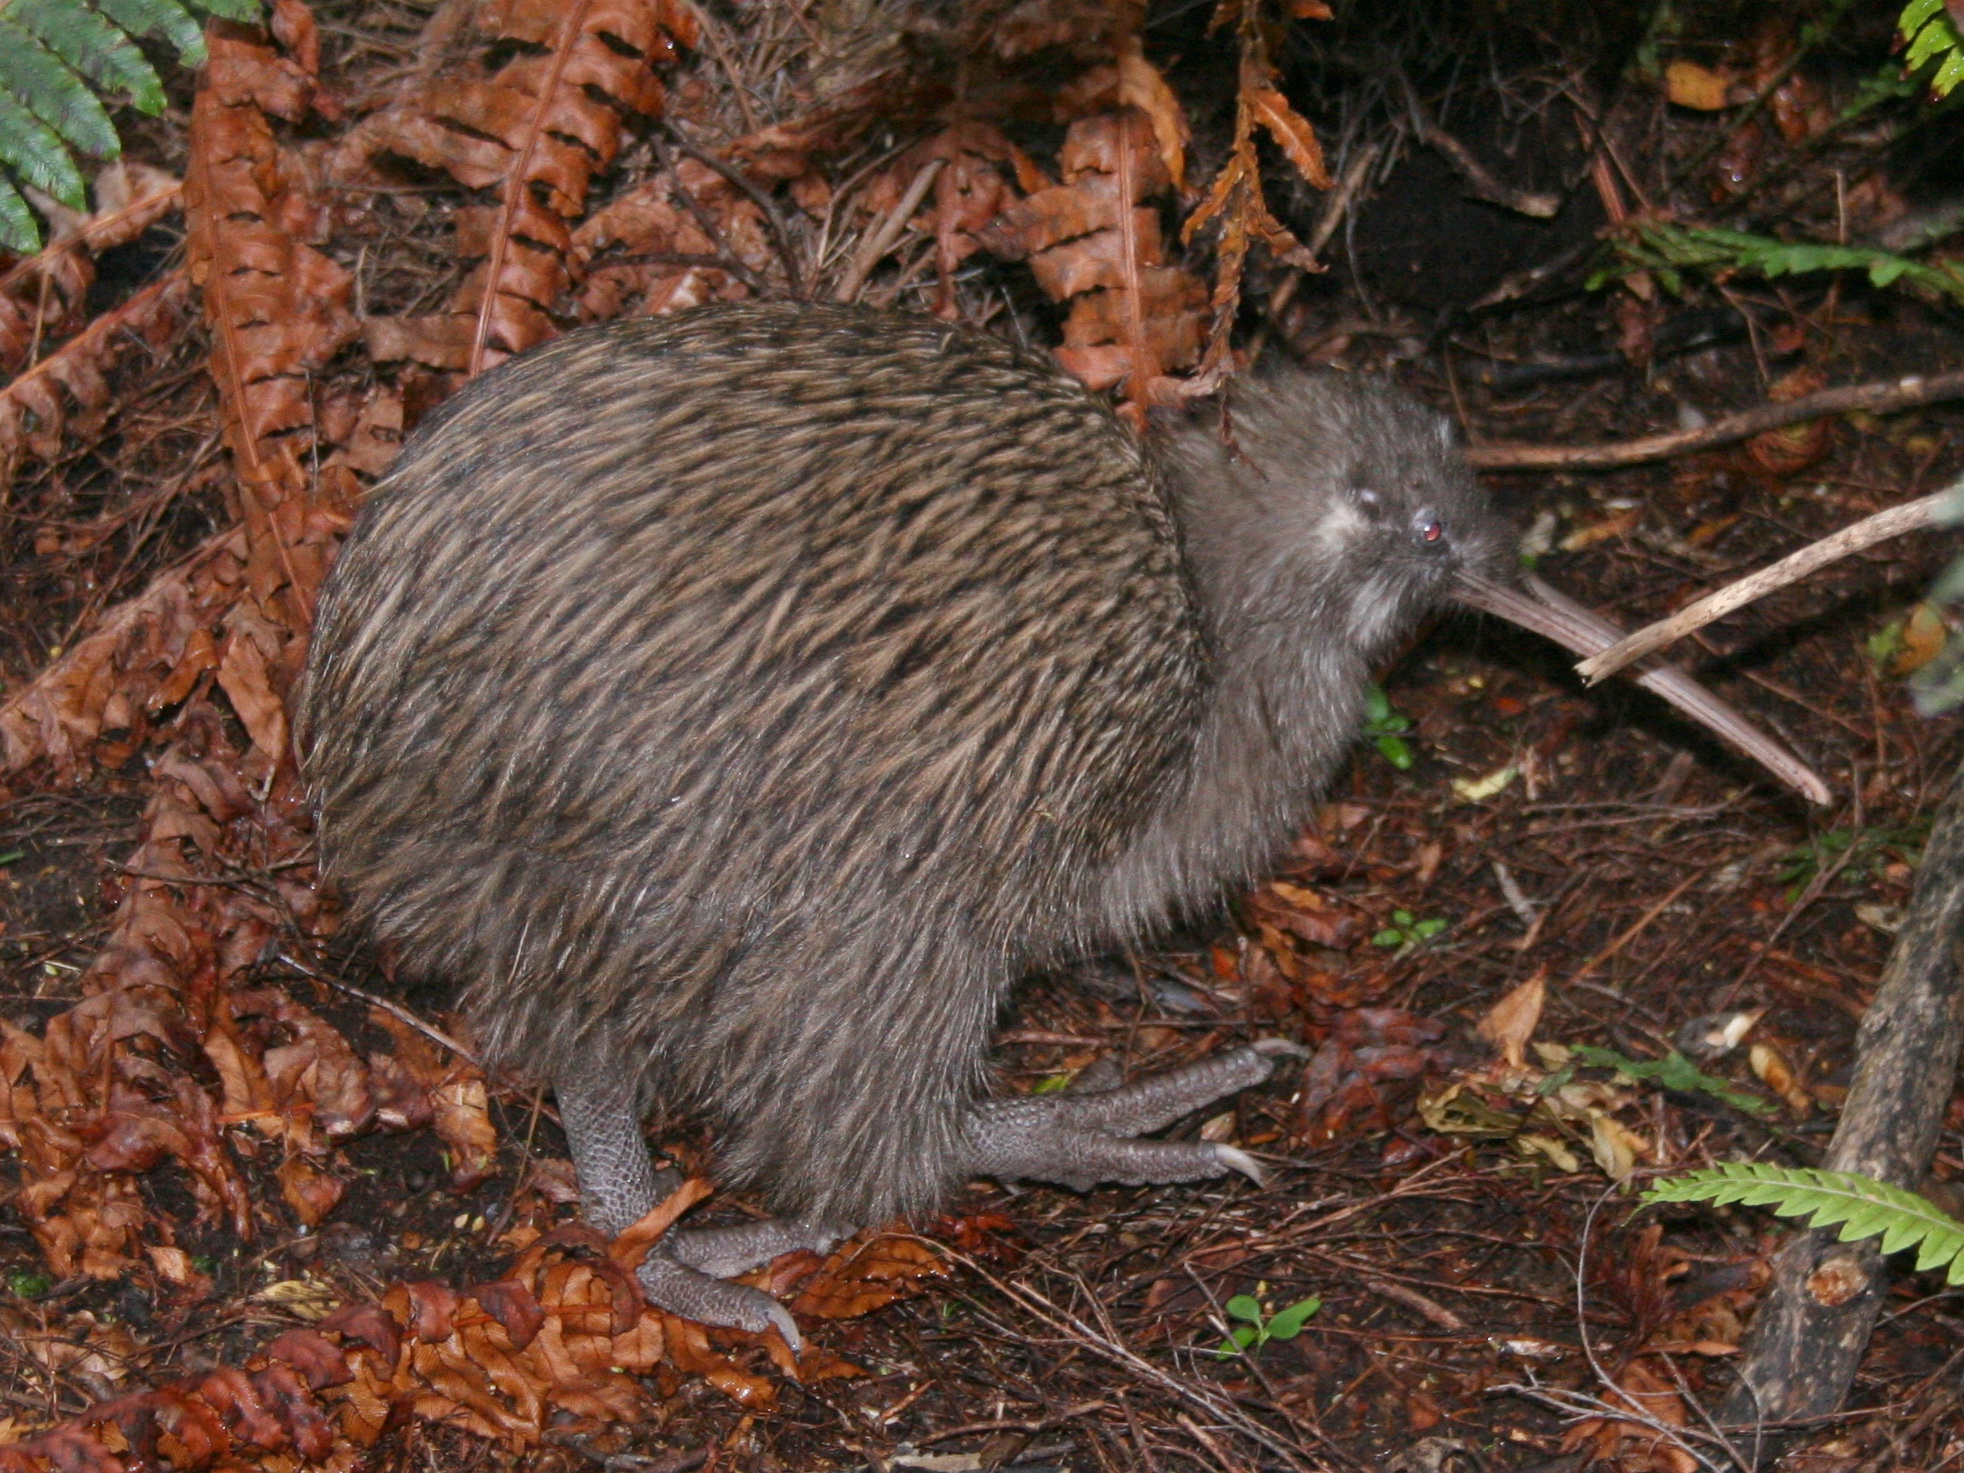 Southern Brown Kiwi. Image credit: Wikipedia, Glen Fergus (CC by 2.5 SA)